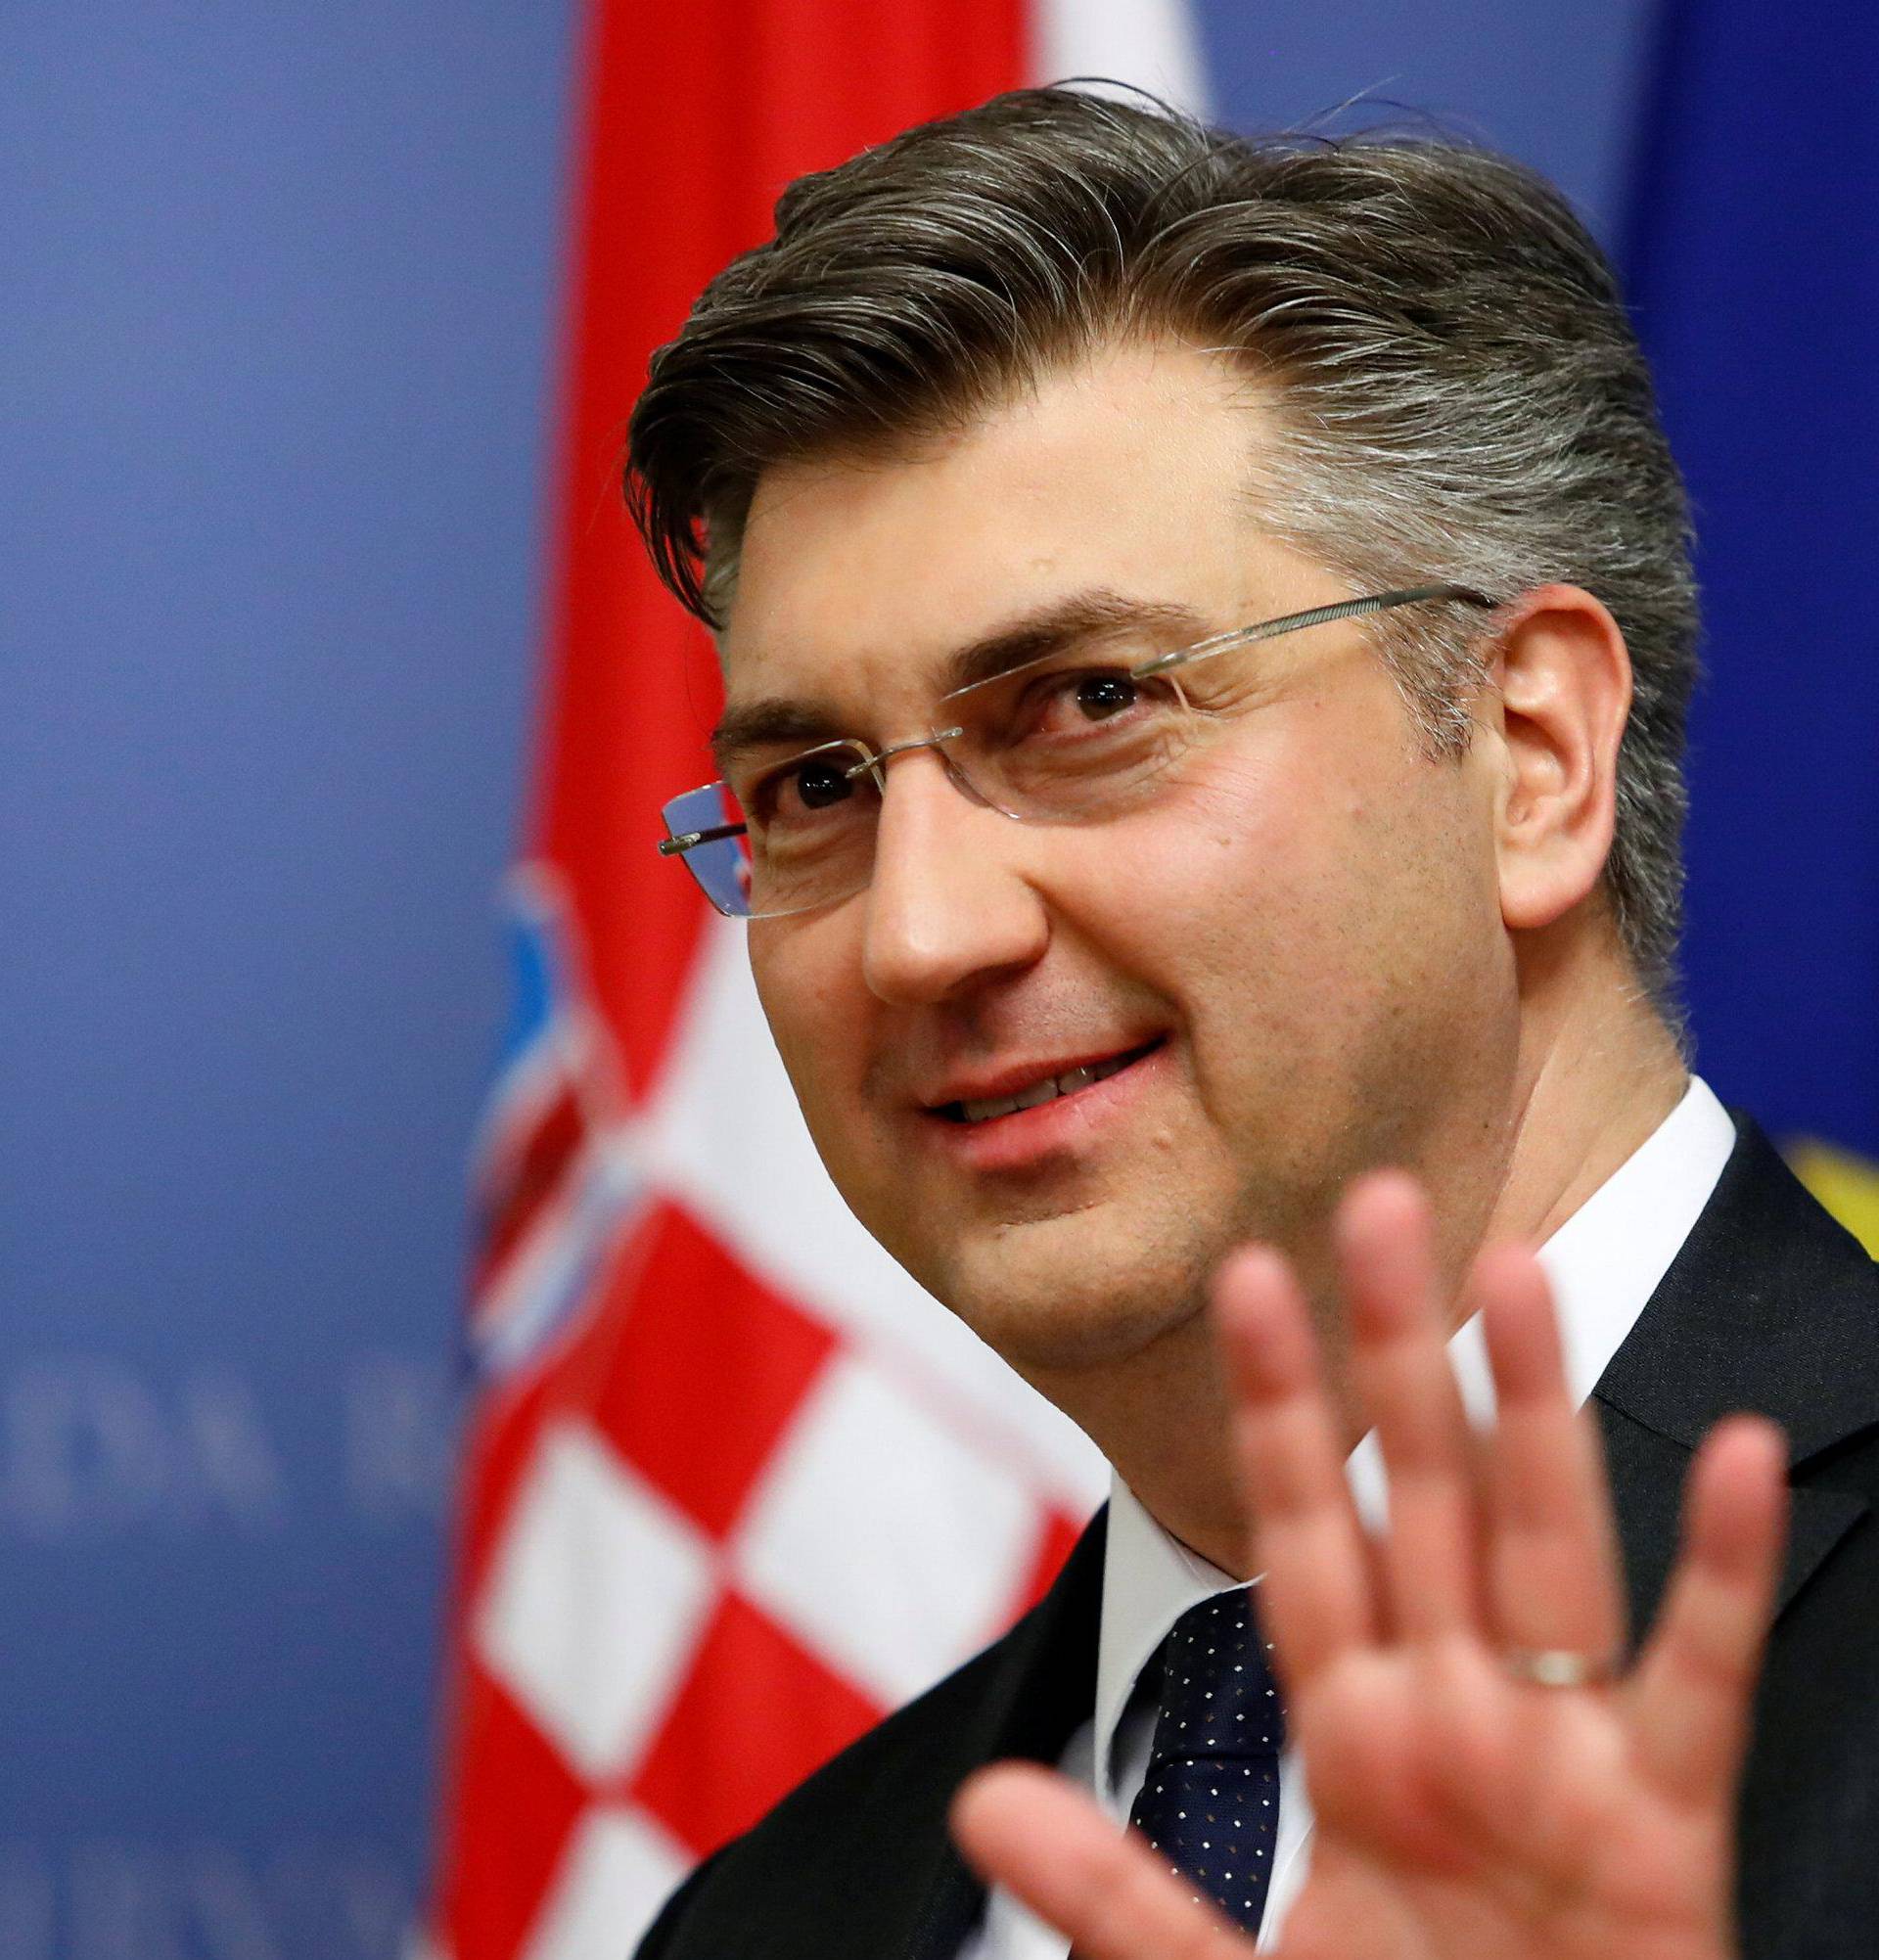 Croatia's Prime Minister Andrej Plenkovic gestures in a government building in Zagreb